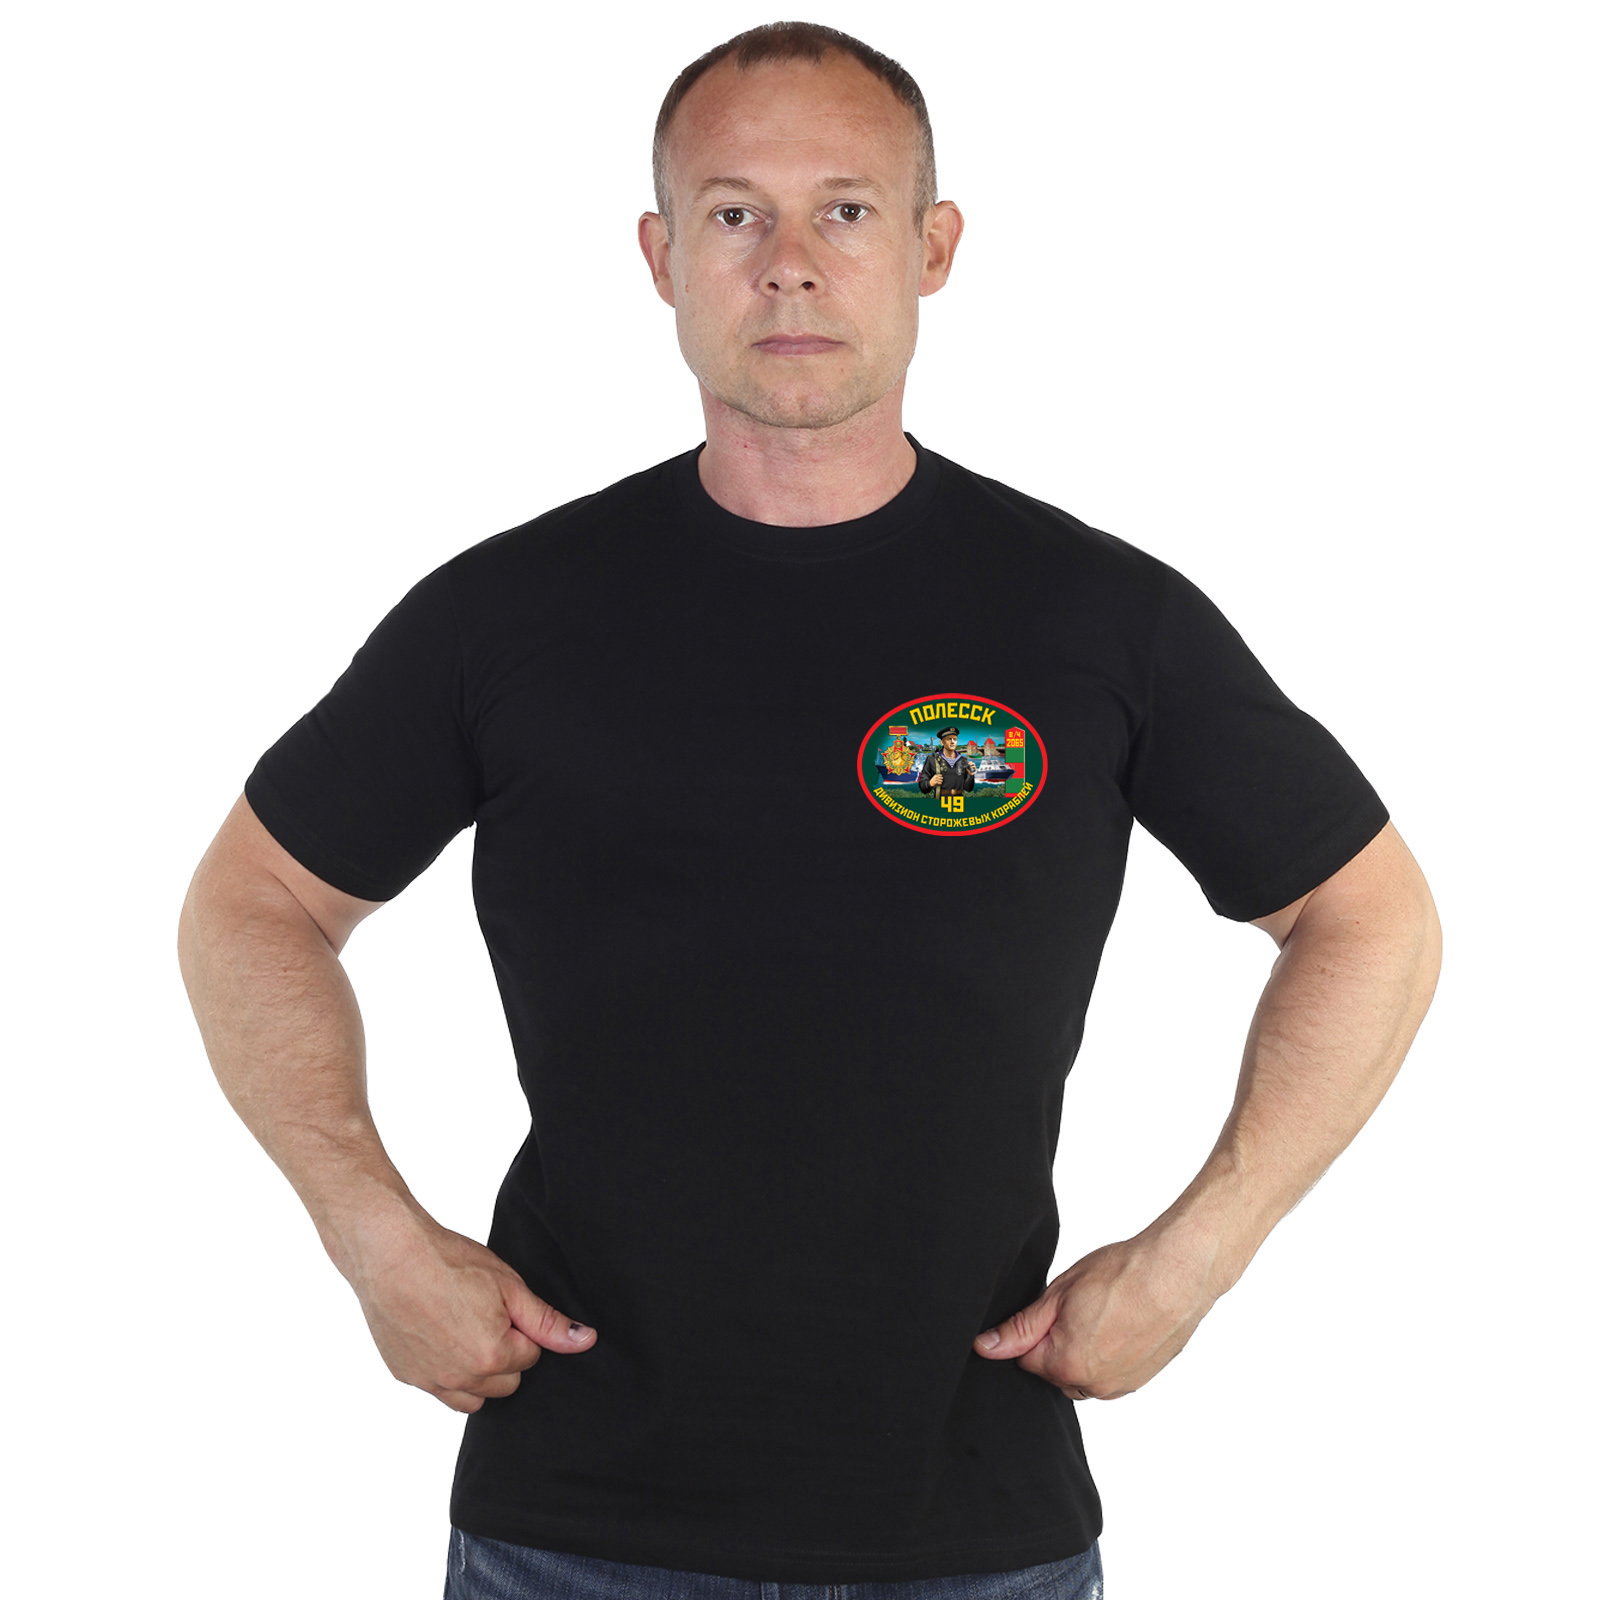 Купить в интернет магазине футболку 49 дивизион ПСКР Полесск